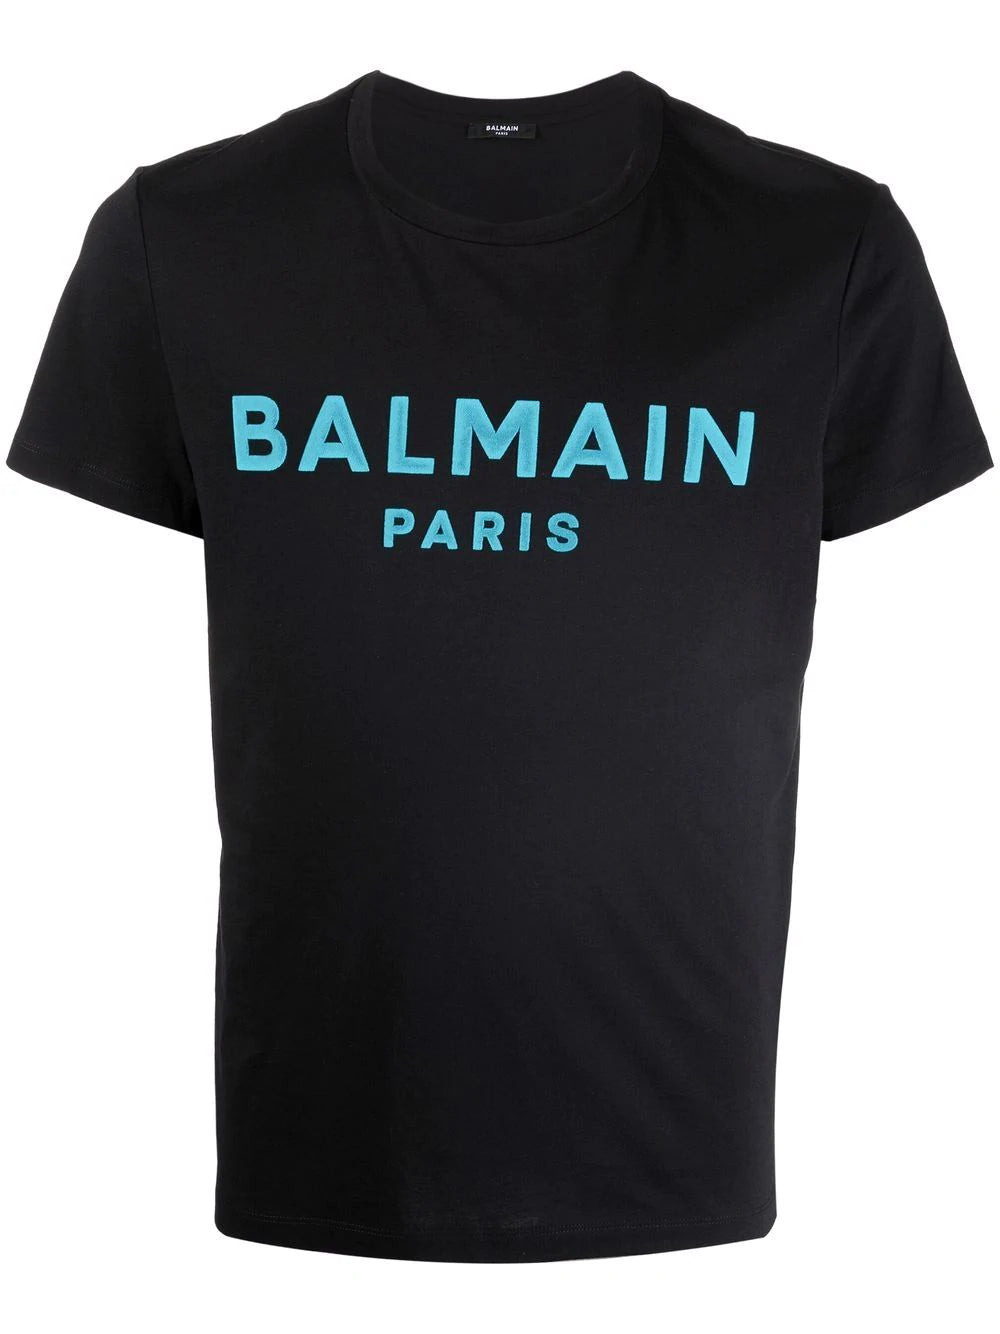 BALMAIN Logo T-Shirt Black/Blue